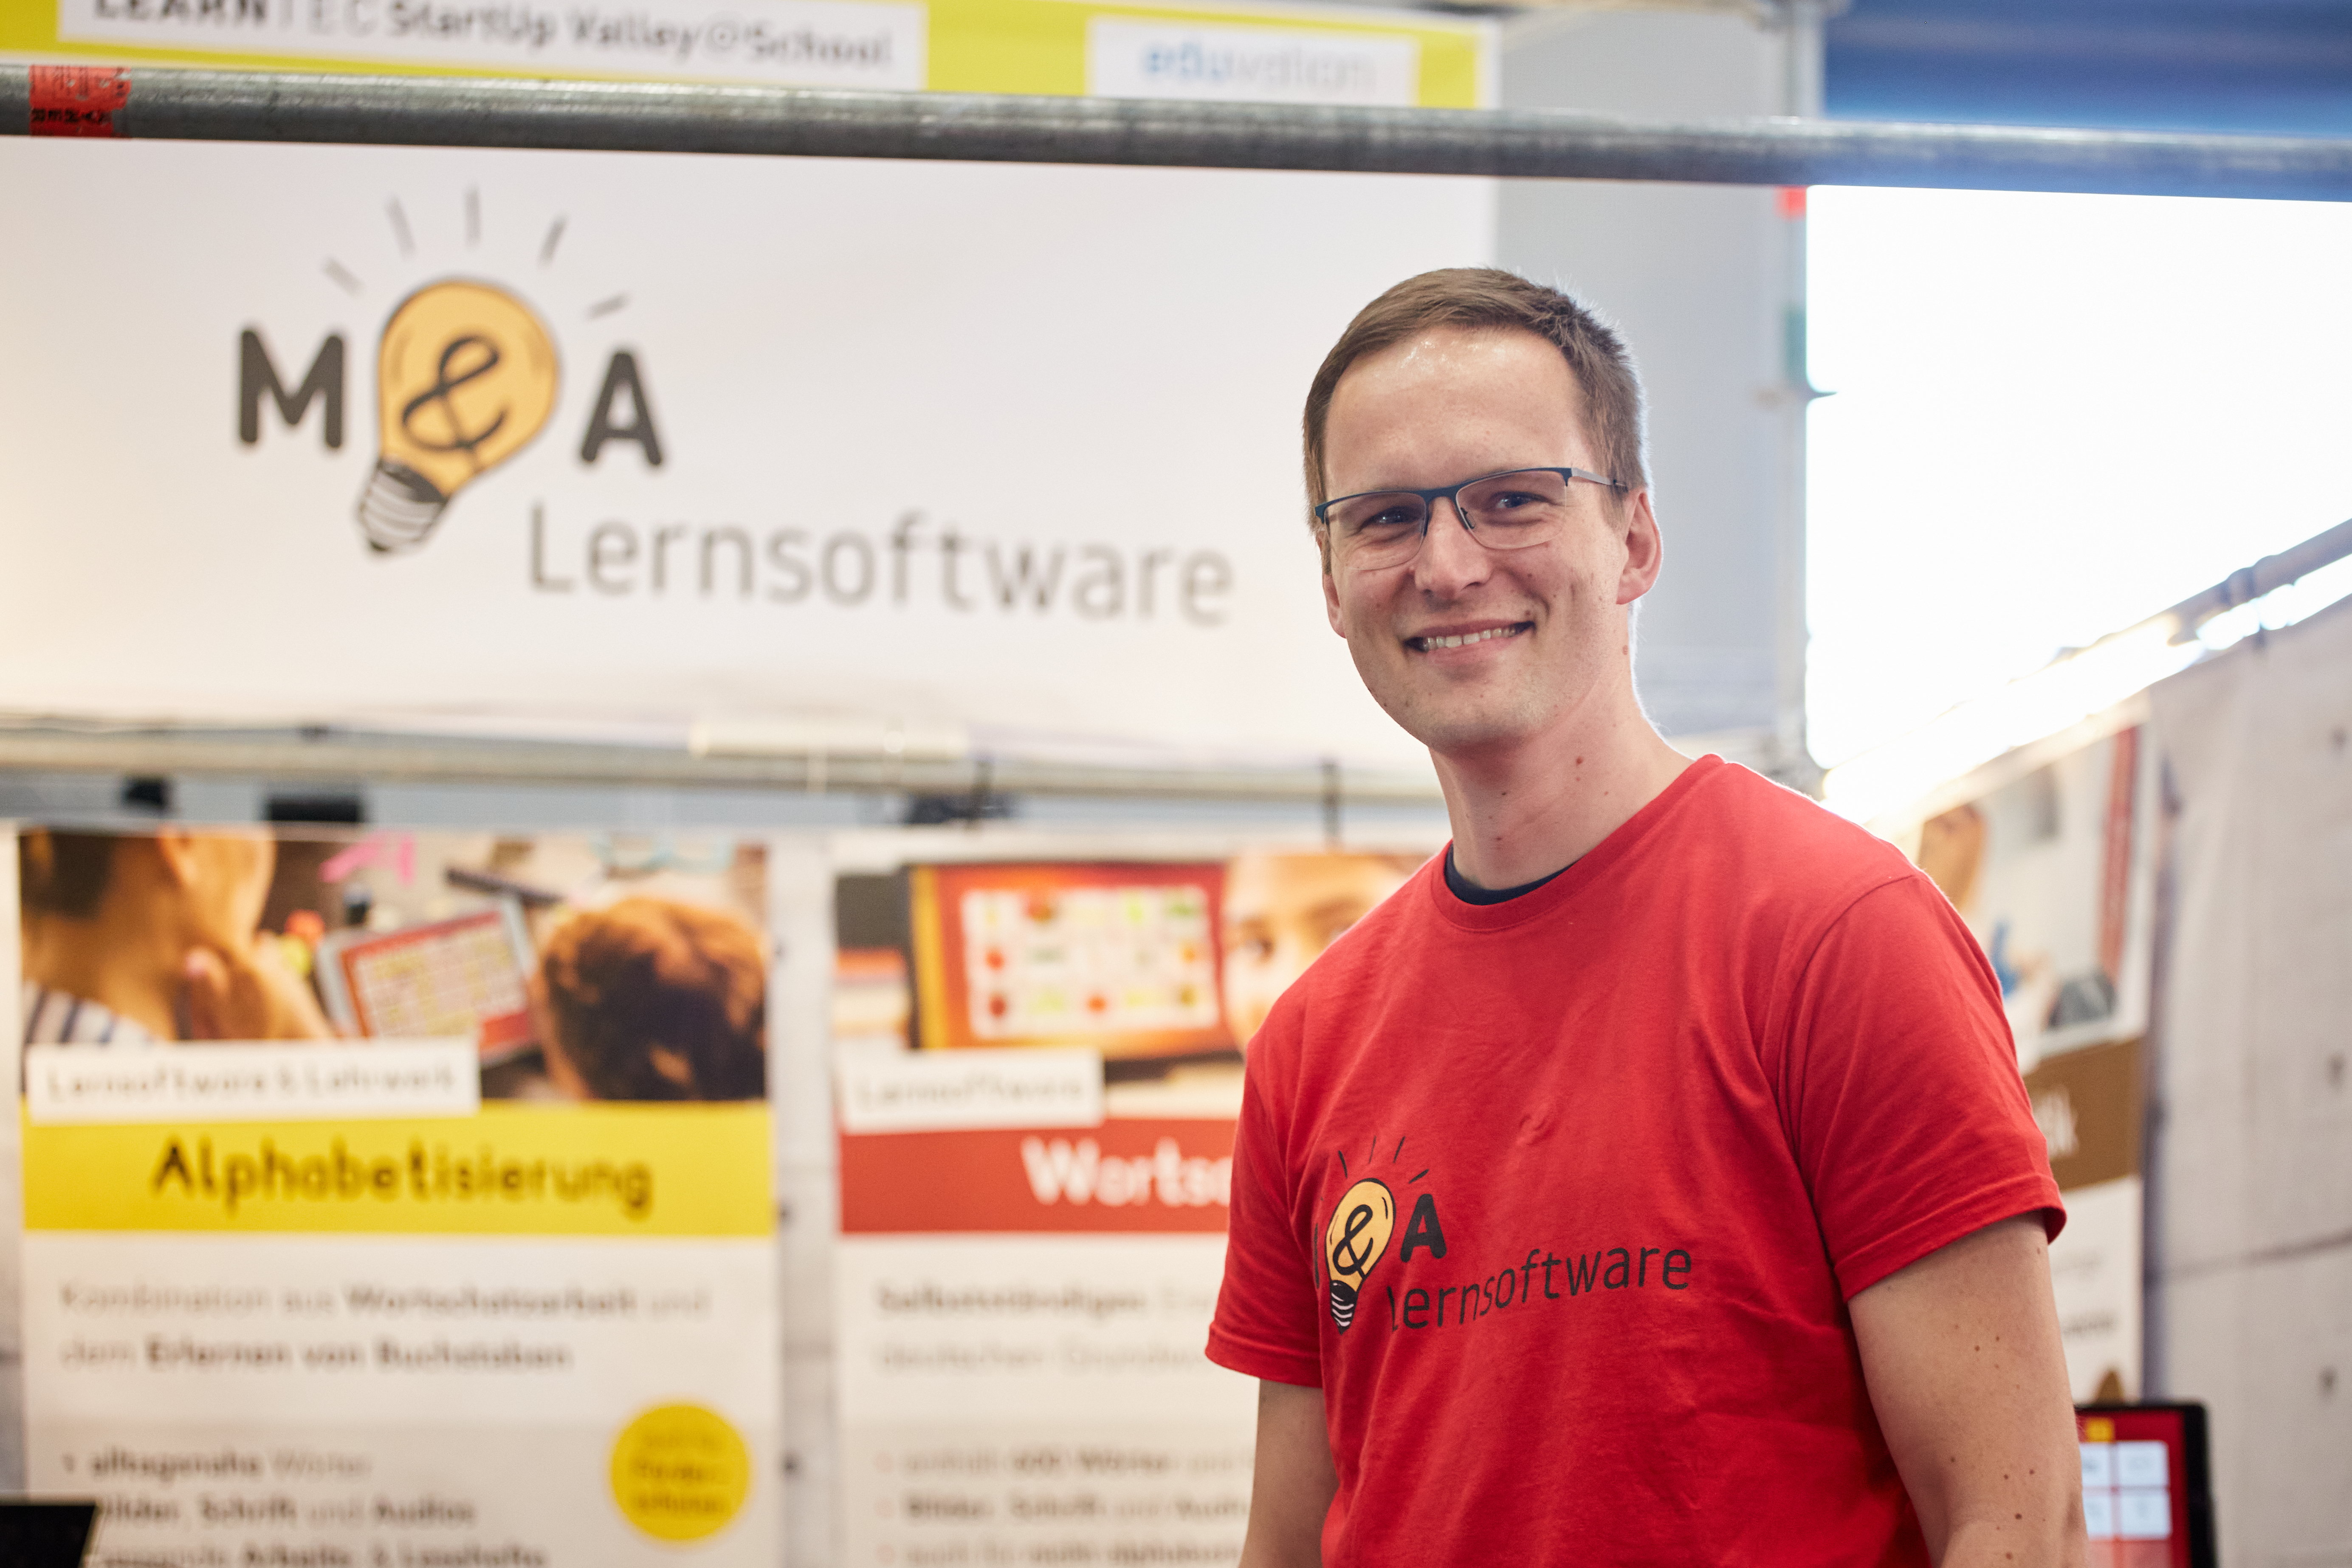  Matthias Geenen, Gründer von M&A Lernsoftware 